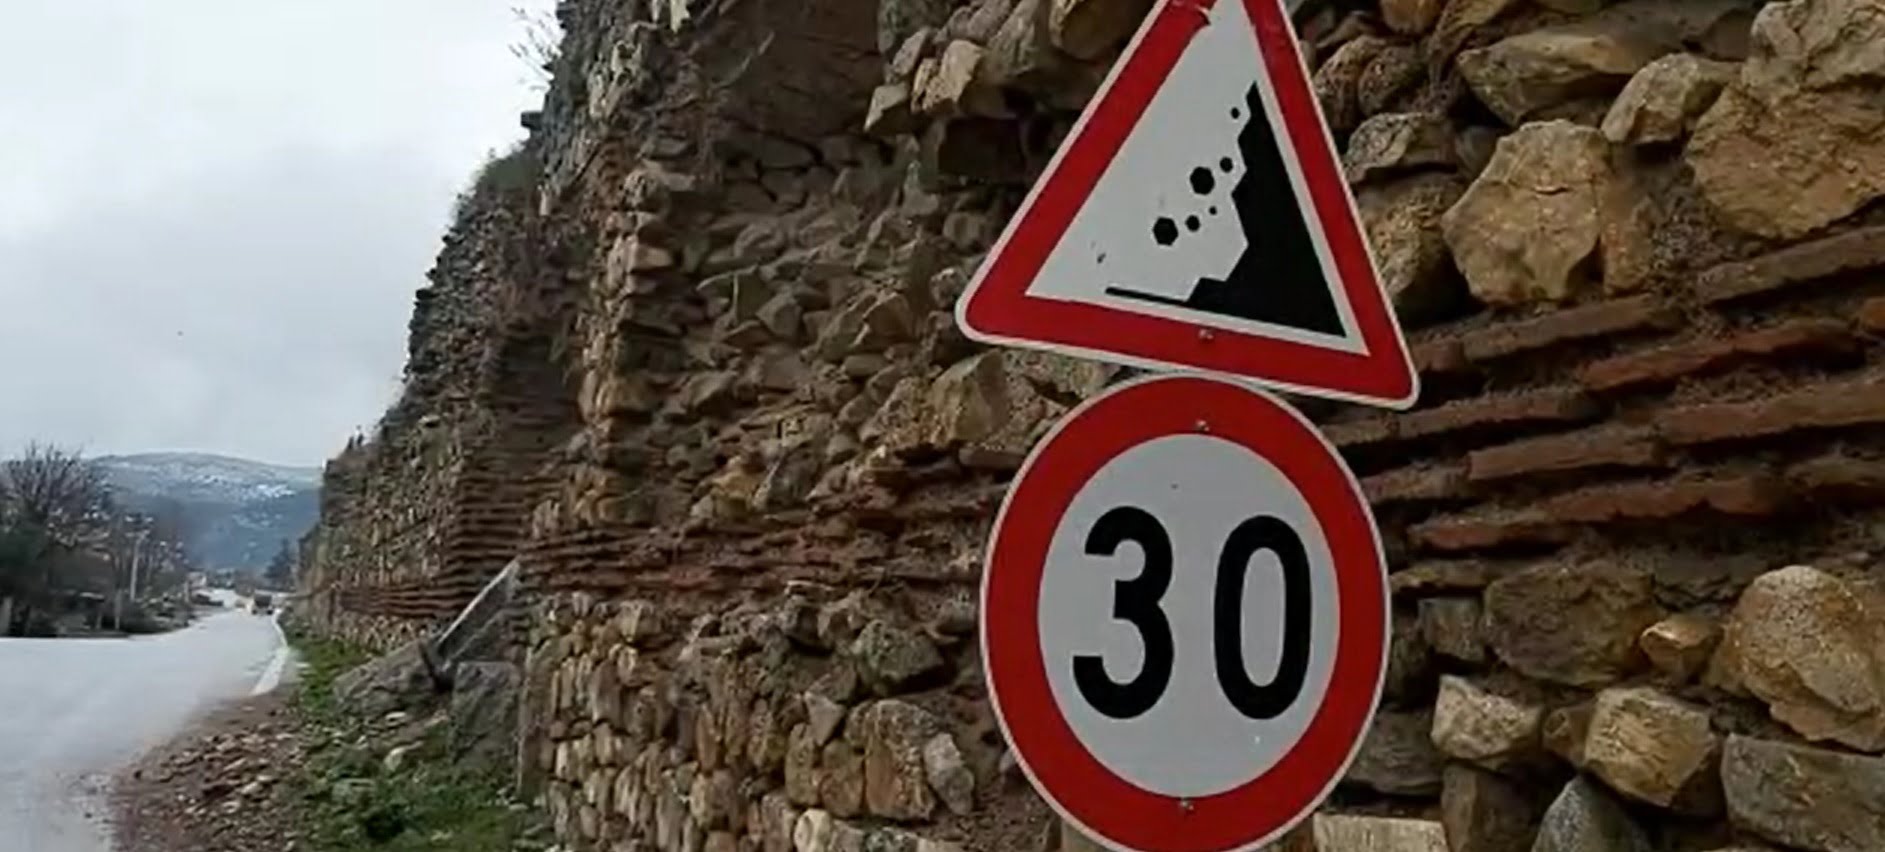 Bursa'da tarihi surdan düşen taşlar tehlike saçıyor